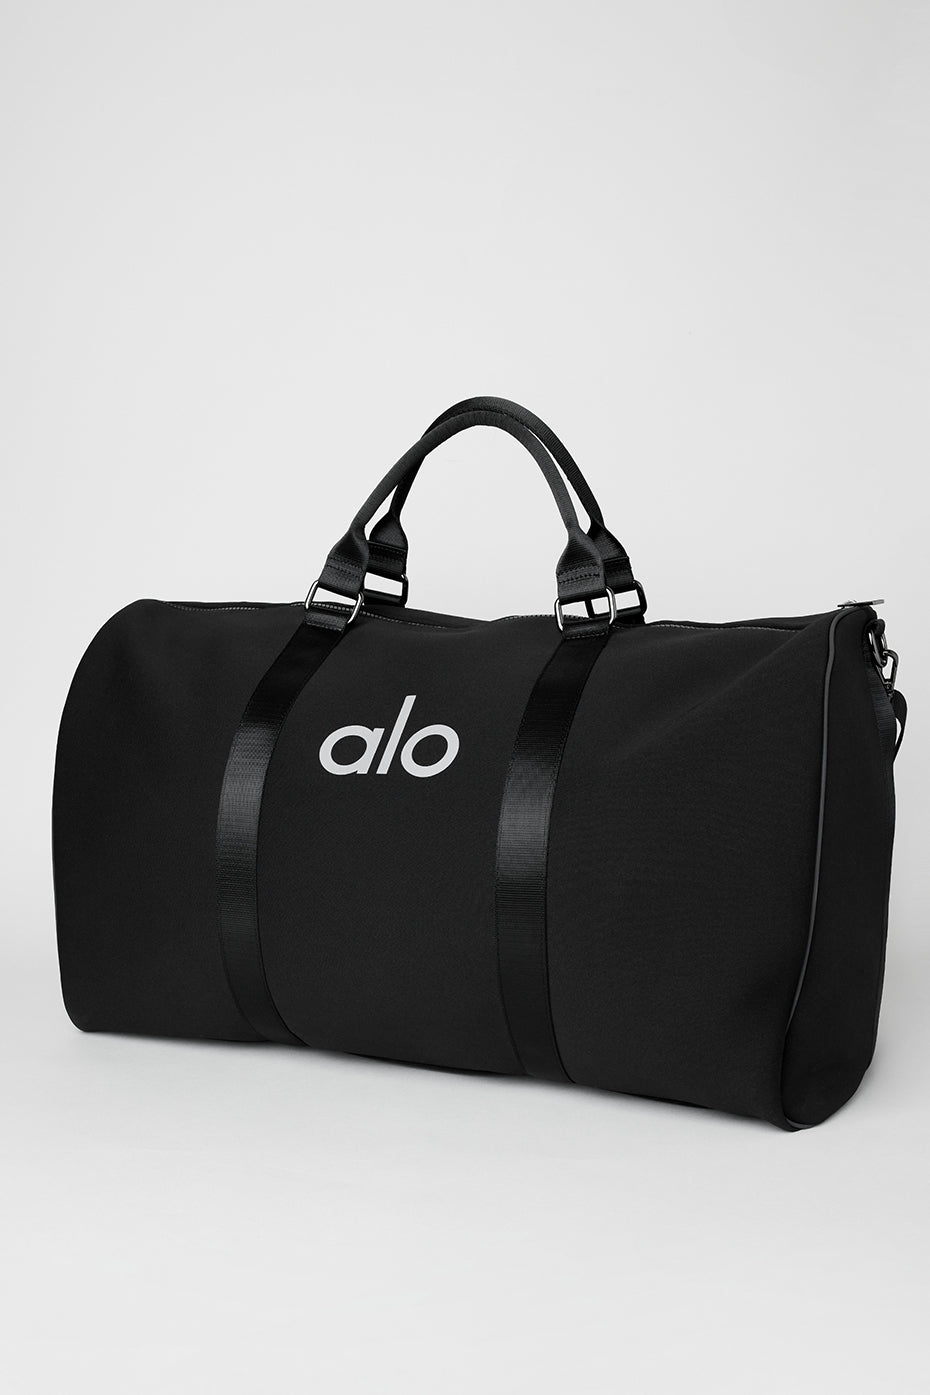 Alo Yoga Utility Tote Bag